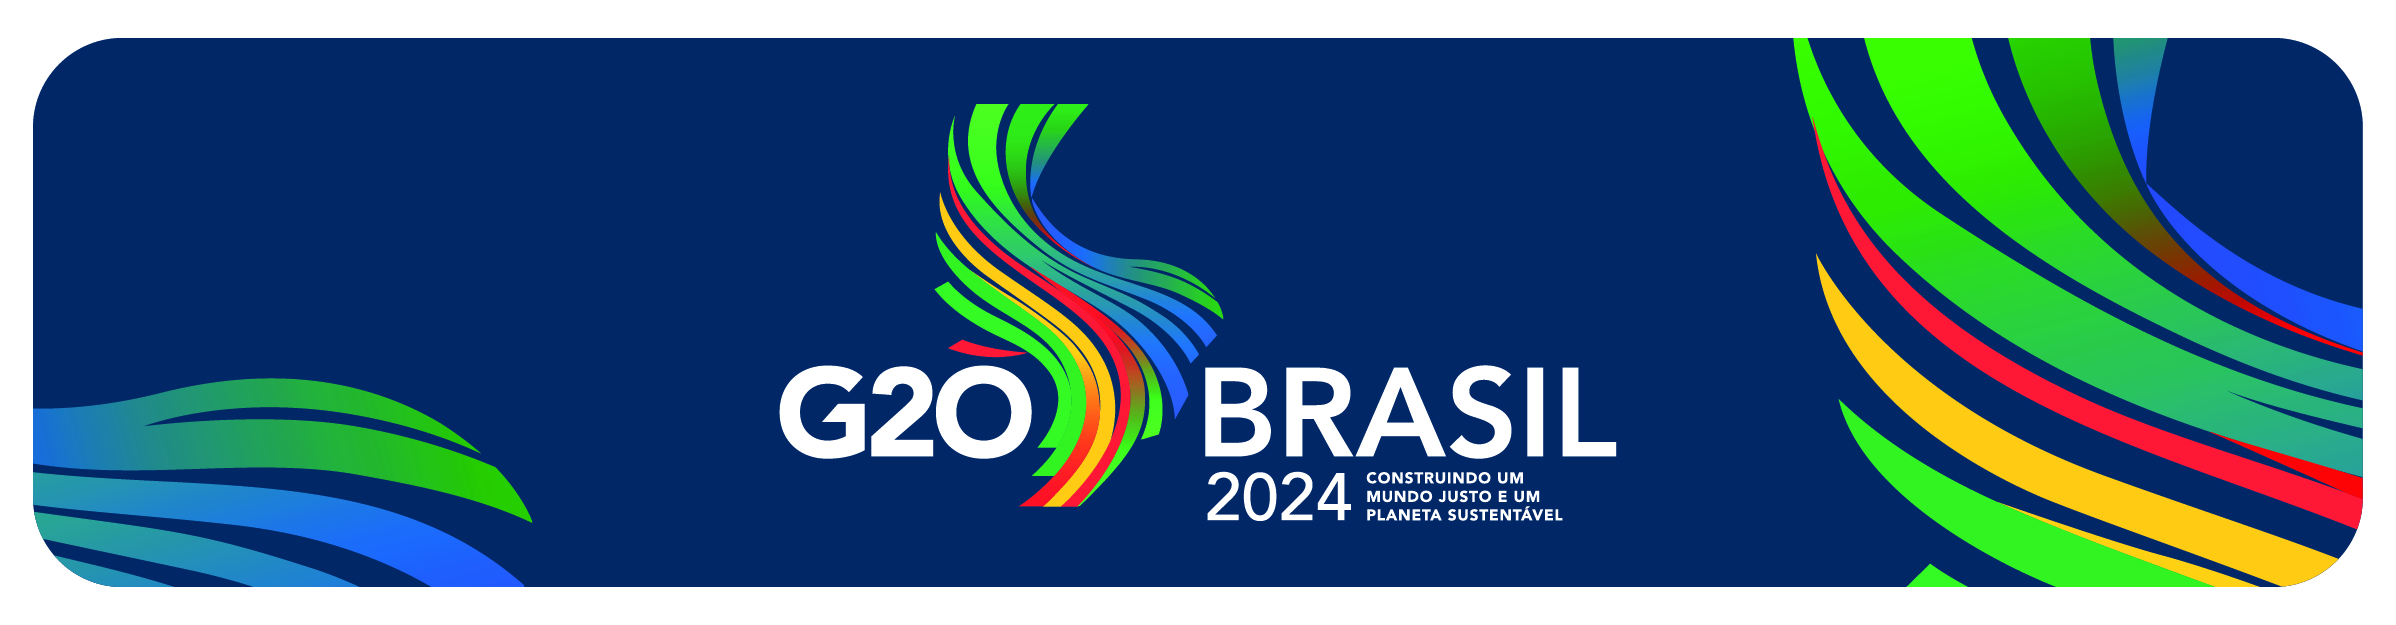 banner azul escuro com a logo do G20 Brasil